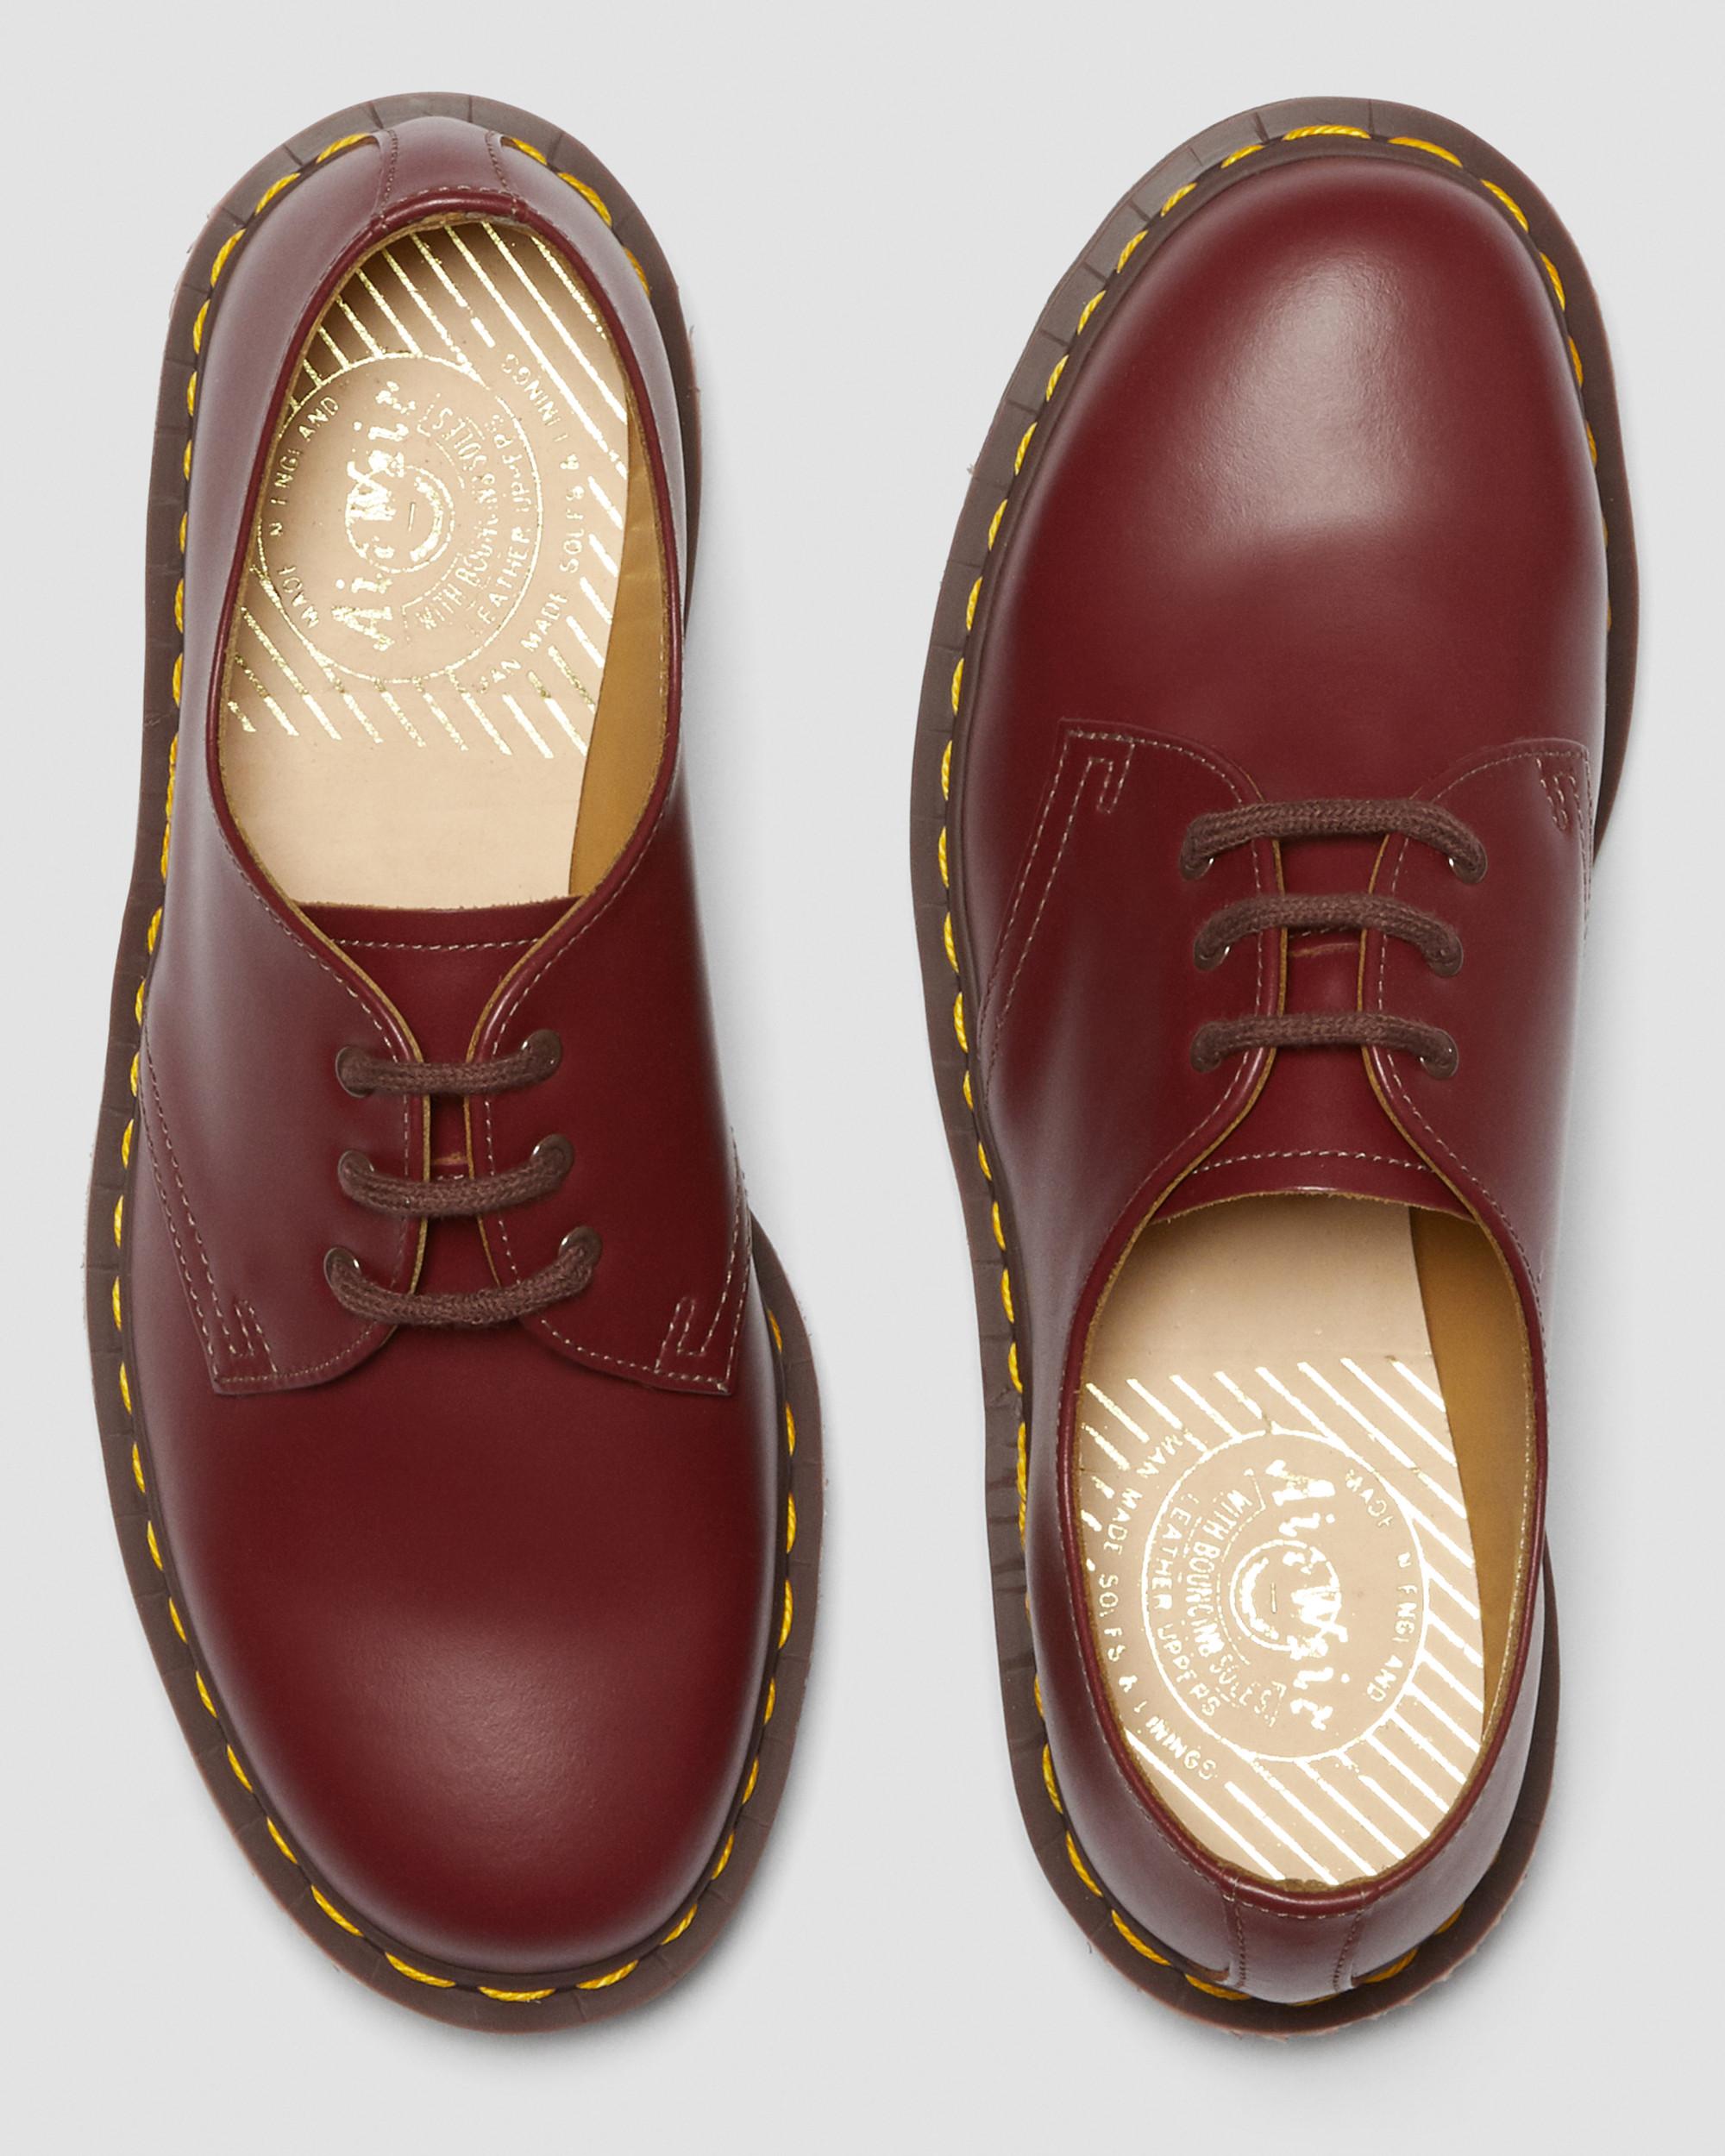 Vintage 1461 Quilon Leather Oxford Shoes | Dr. Martens